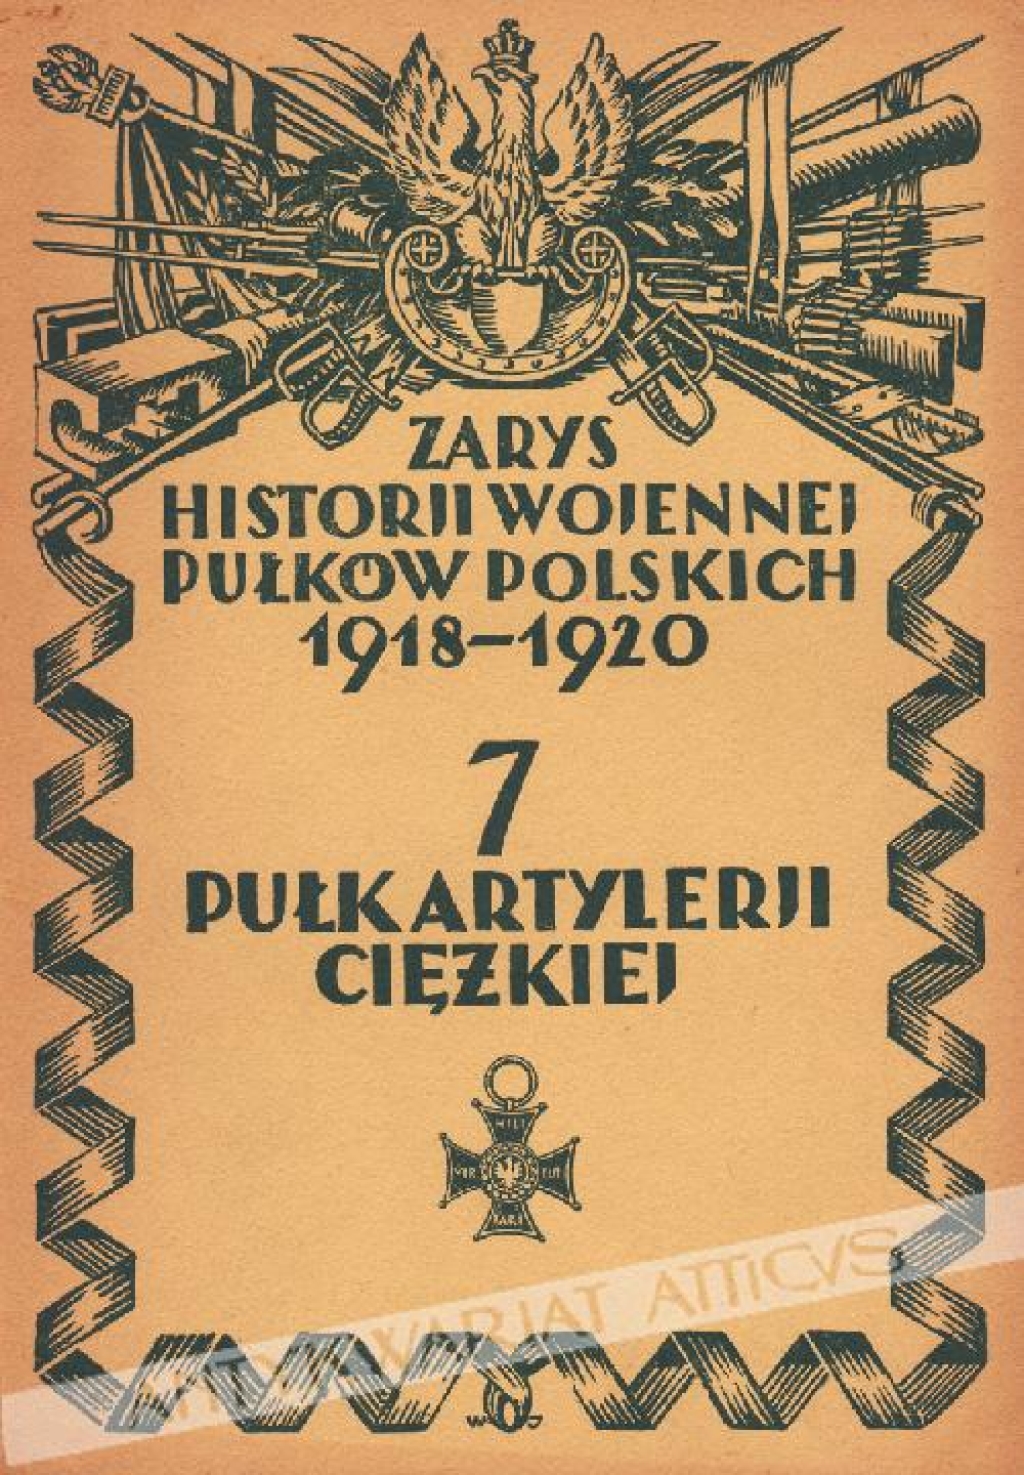 Zarys historji wojennej pułków polskich 1918-1920
 7 Pułk Artylerji Ciężkiej.